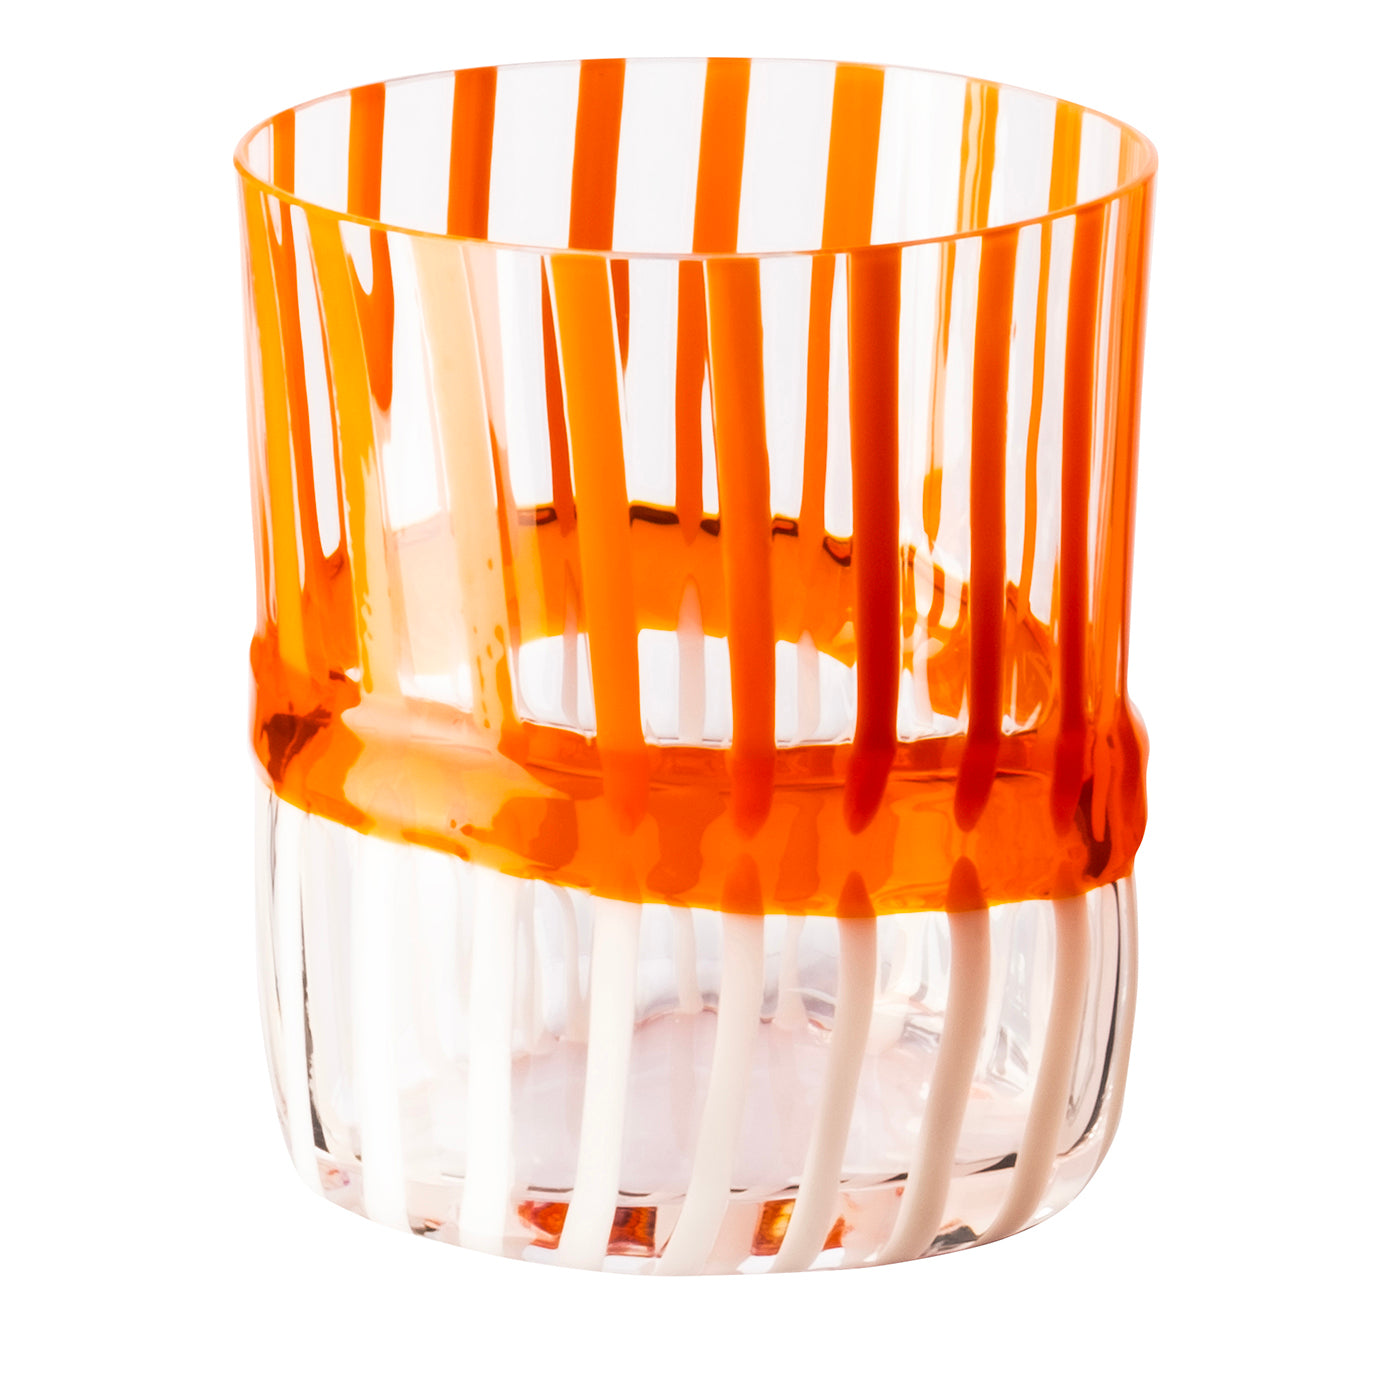 Bora Oval-Cut Striped White&Orange Glass by Carlo Moretti - Main view